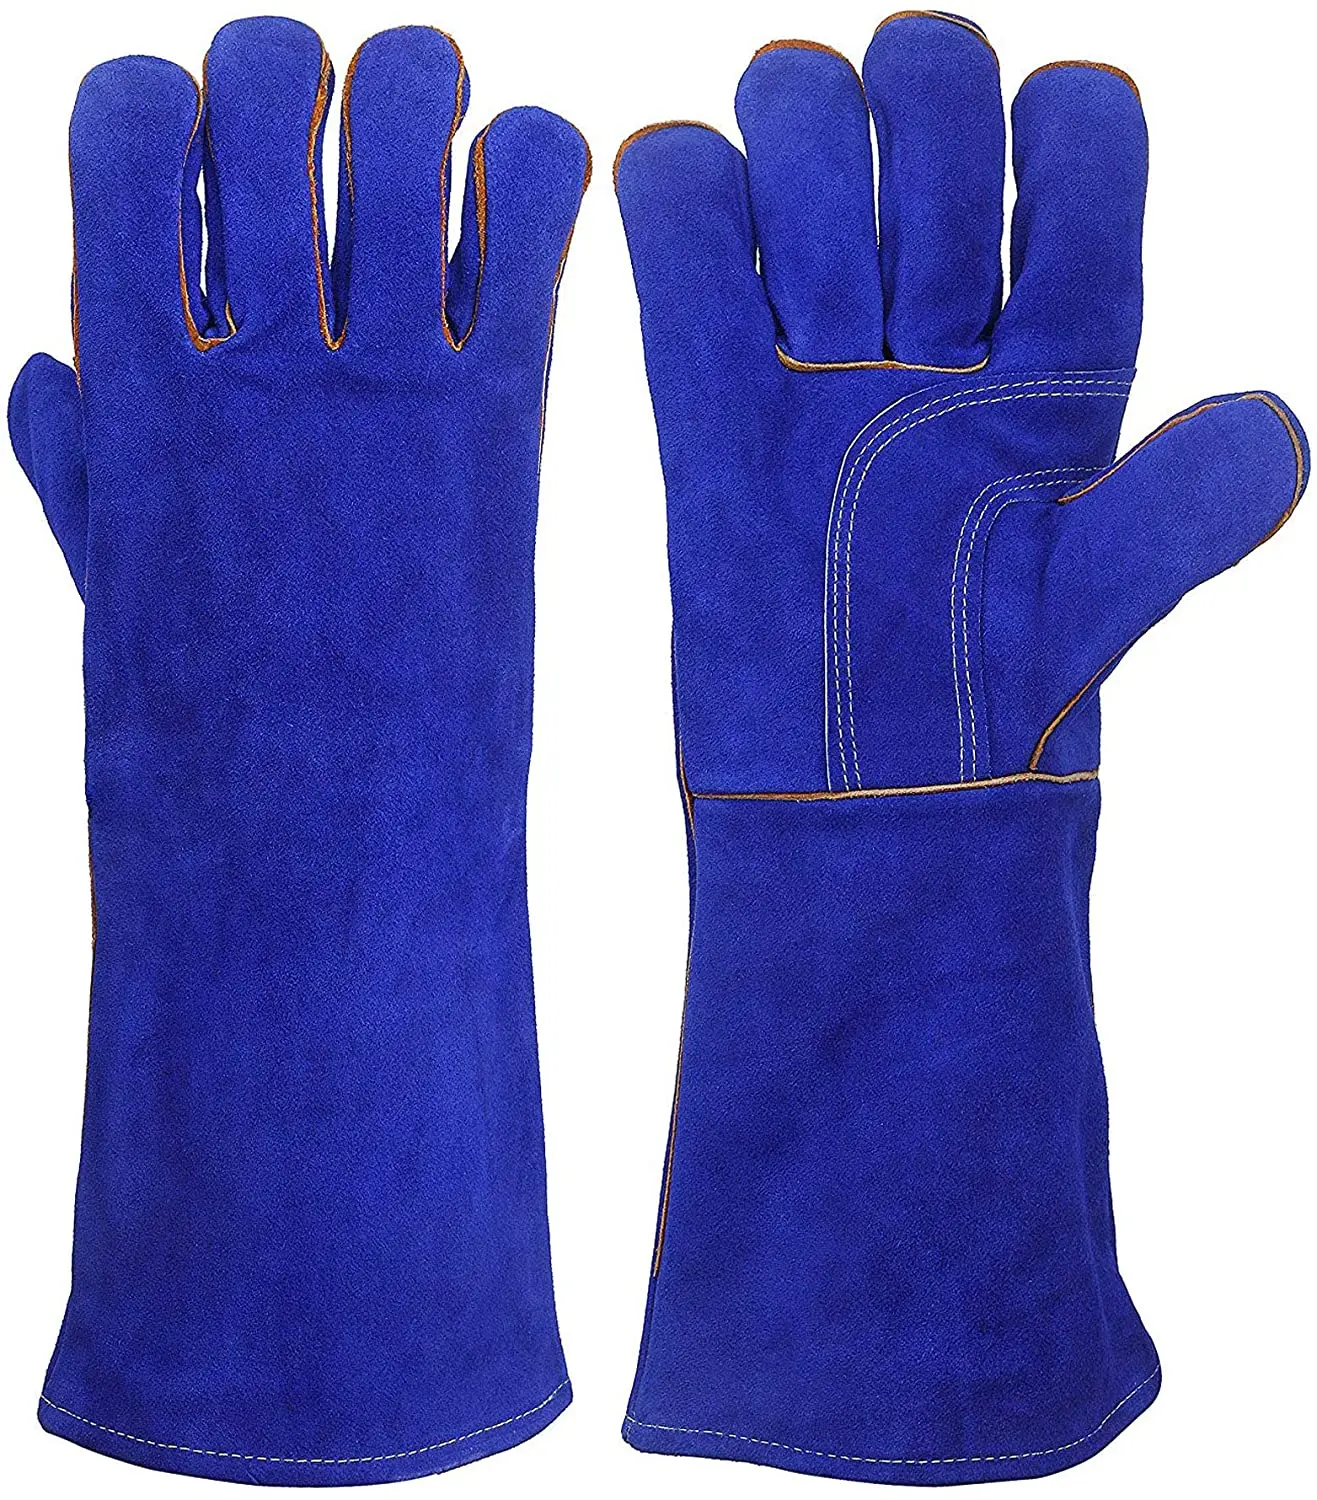 Краги синие. Огнеупорные перчатки lws-022. Перчатки огнеупорные тактические. Маркировка огнеупорные перчатки.